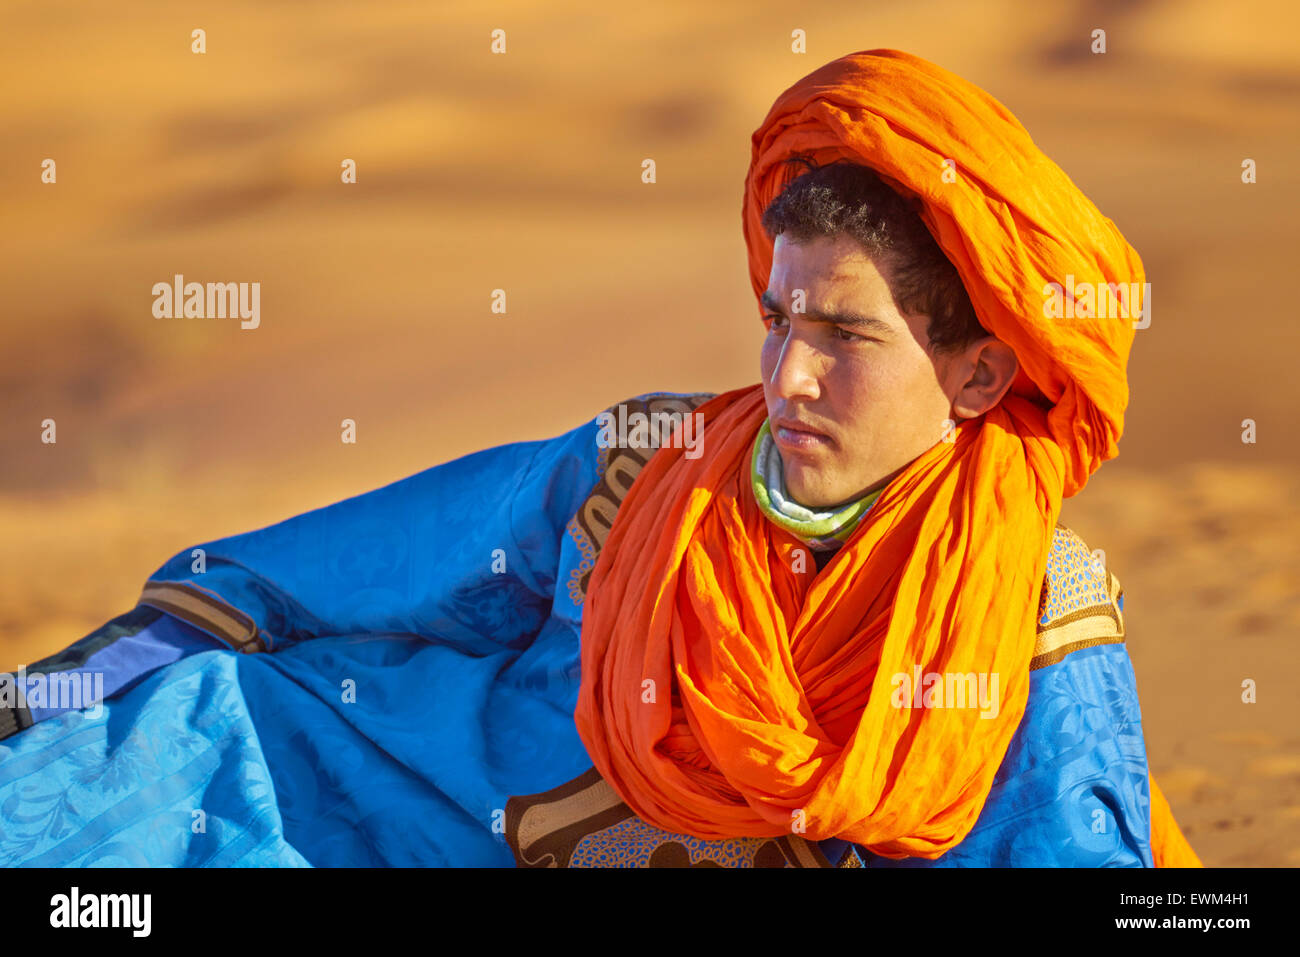 Hombre que llevaba un joven bereber djellaba y turbante, retrato, Egr Chebbi, Sahara, Marruecos Foto de stock